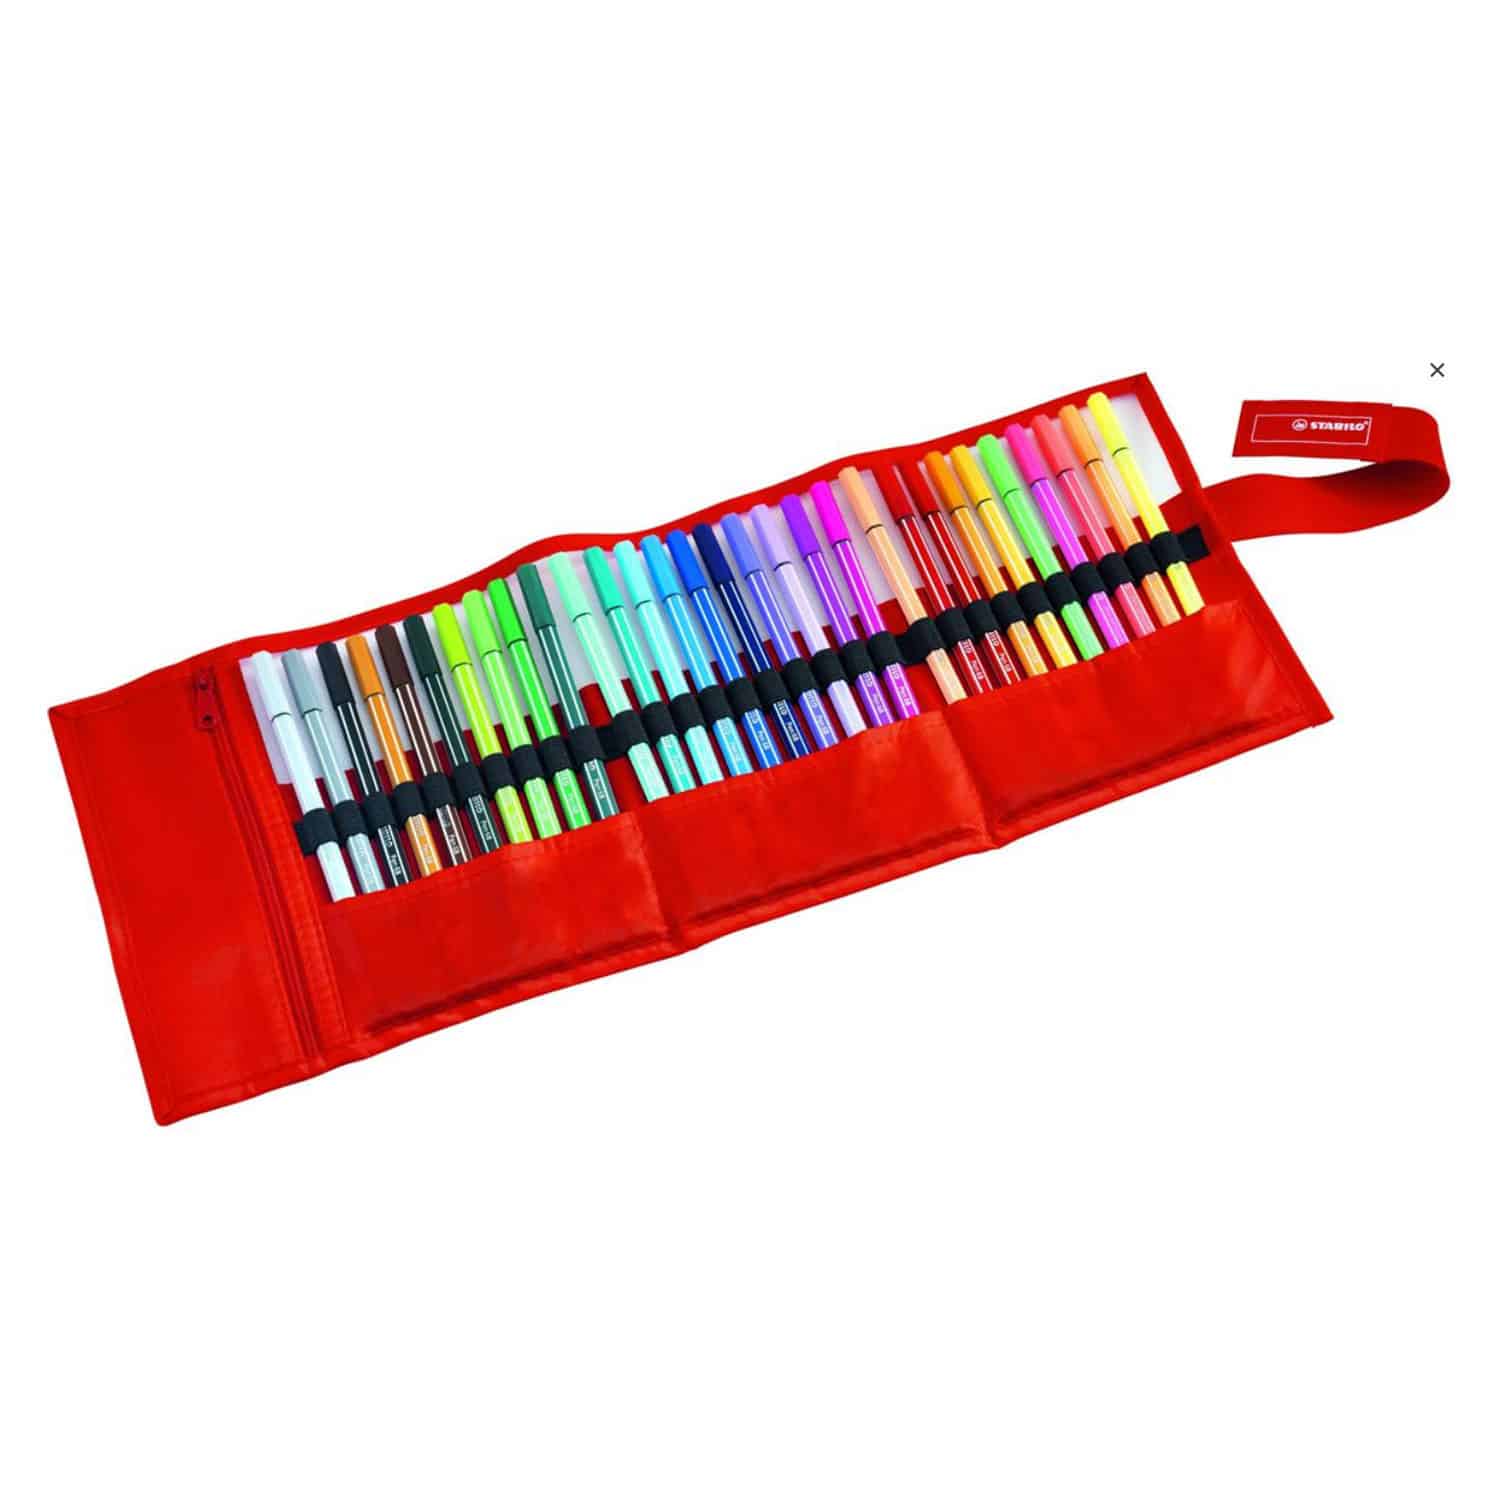 Seizoen Zullen overzee STABILO Pen 68 roletui met 30 kleuren - Suitup - Art Supplies